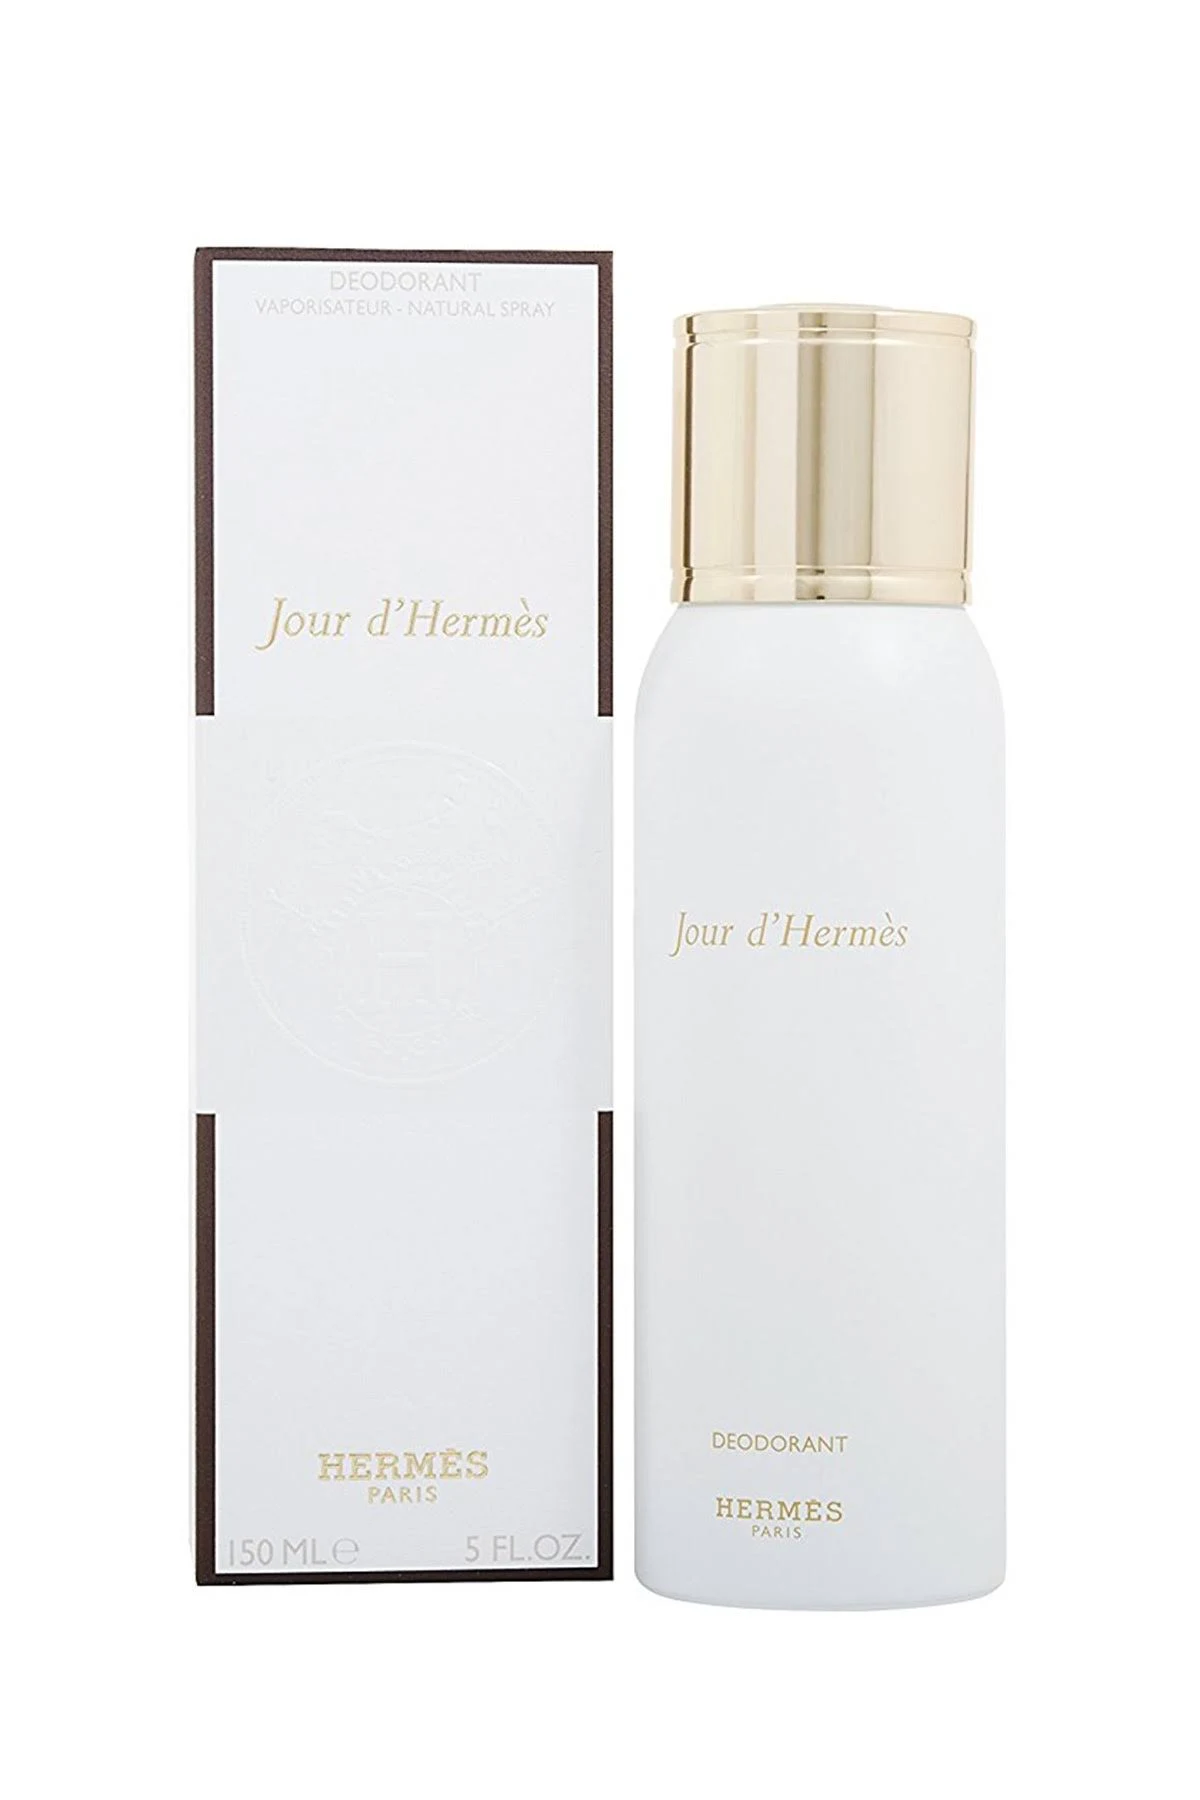 Hermes - Jour D Hermes Deodorant Spray 150 ml